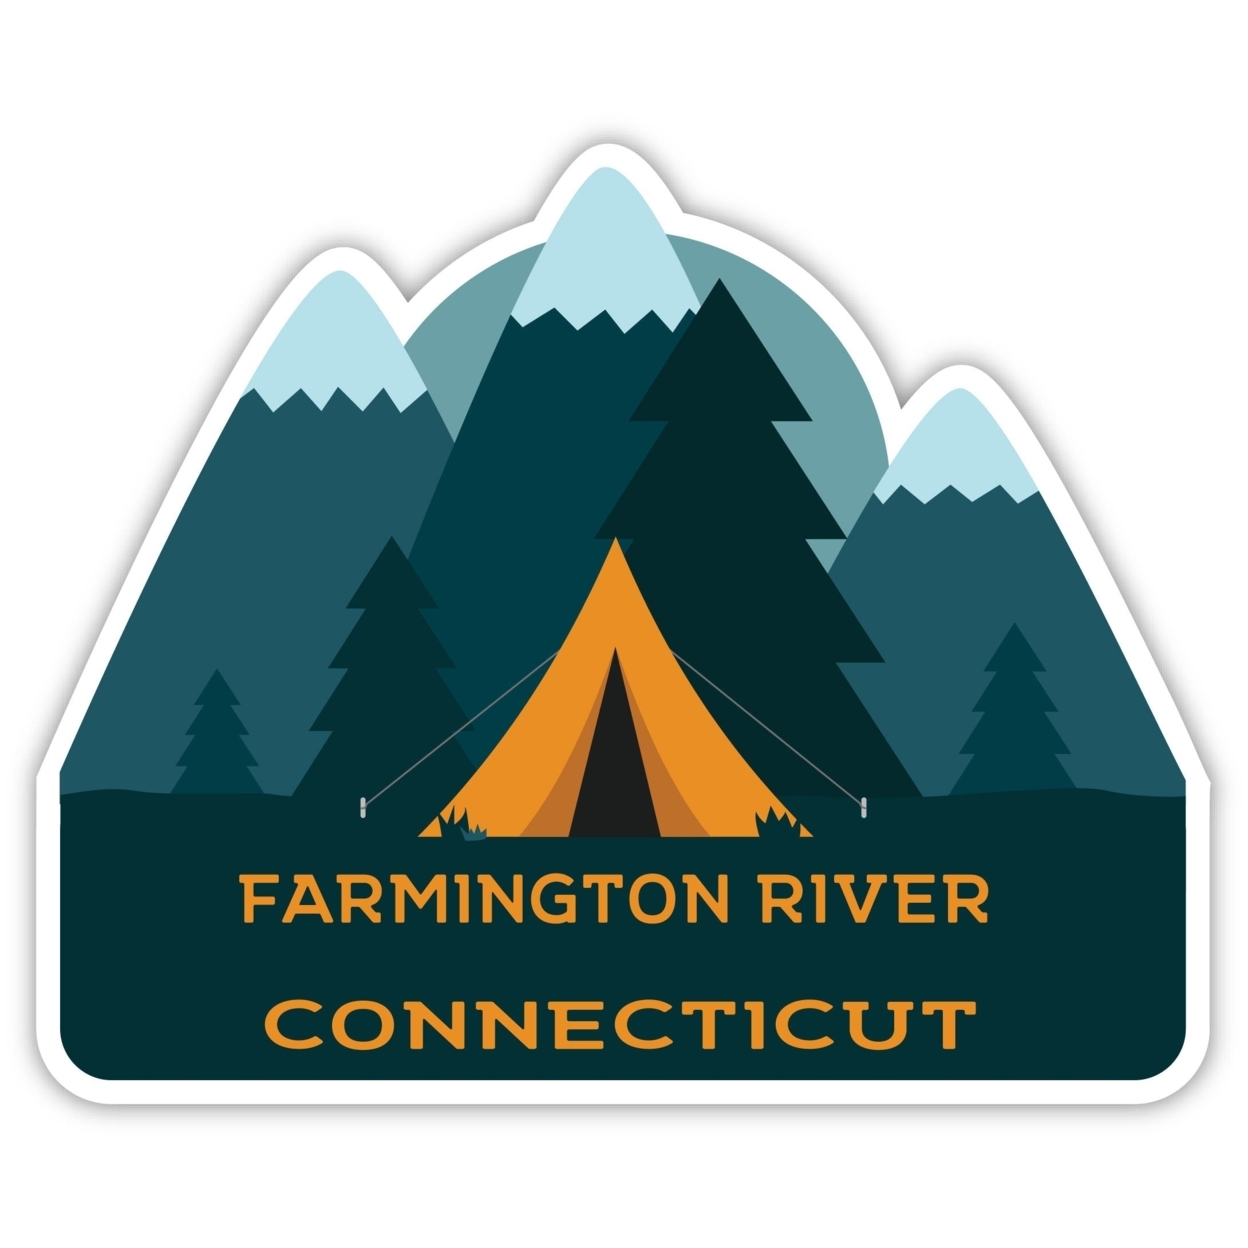 Farmington River Connecticut Souvenir Decorative Stickers (Choose Theme And Size) - Single Unit, 6-Inch, Tent